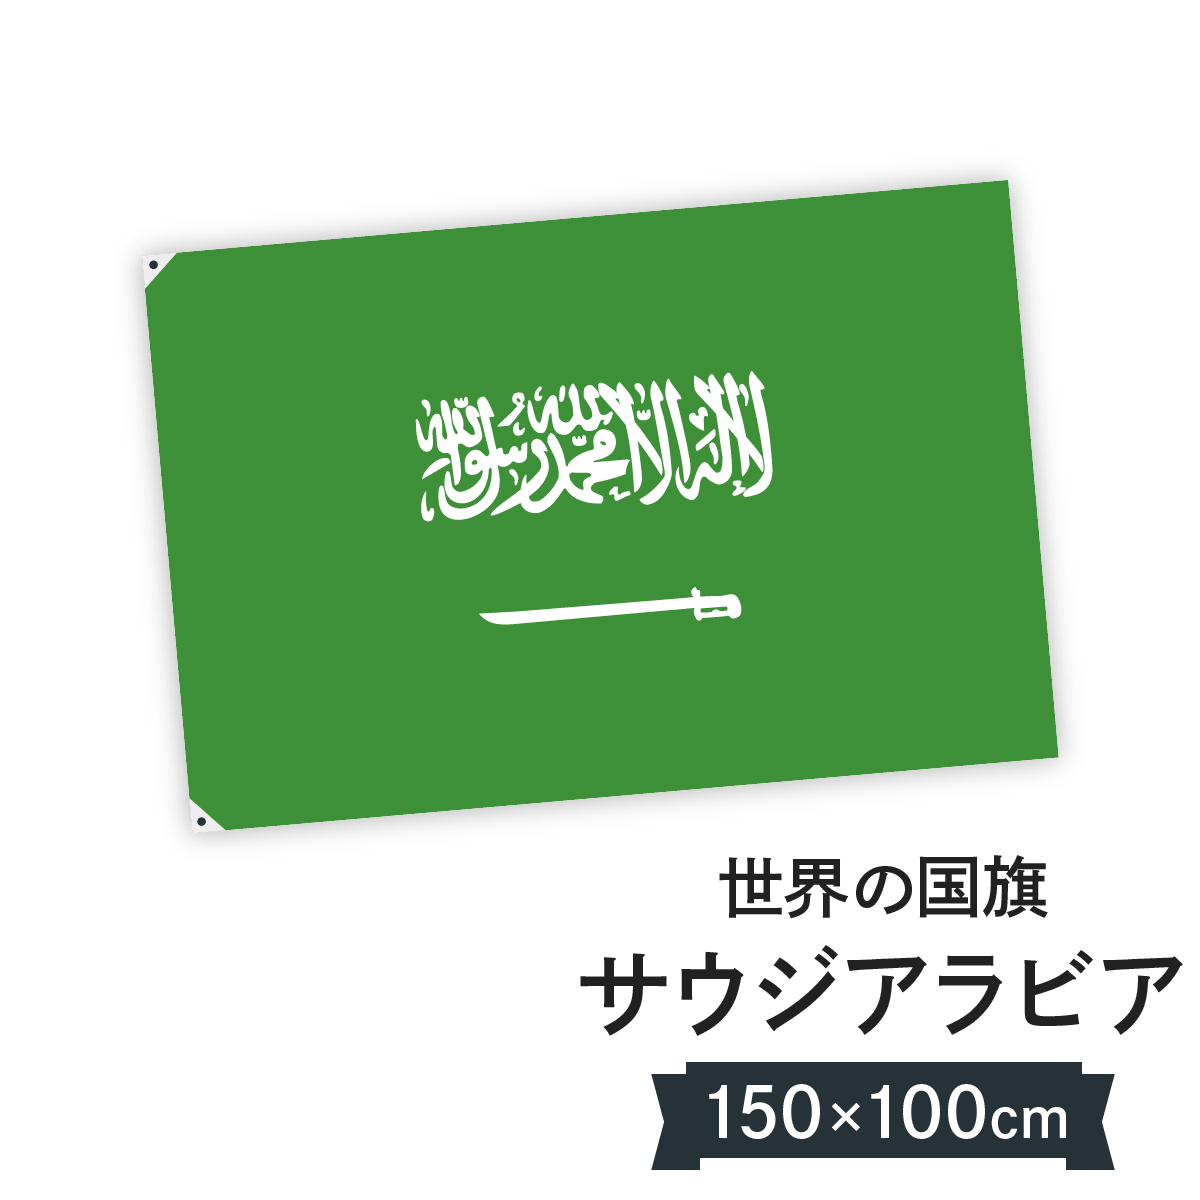 楽天市場 サウジアラビア王国 国旗 W150cm H100cm グッズプロ